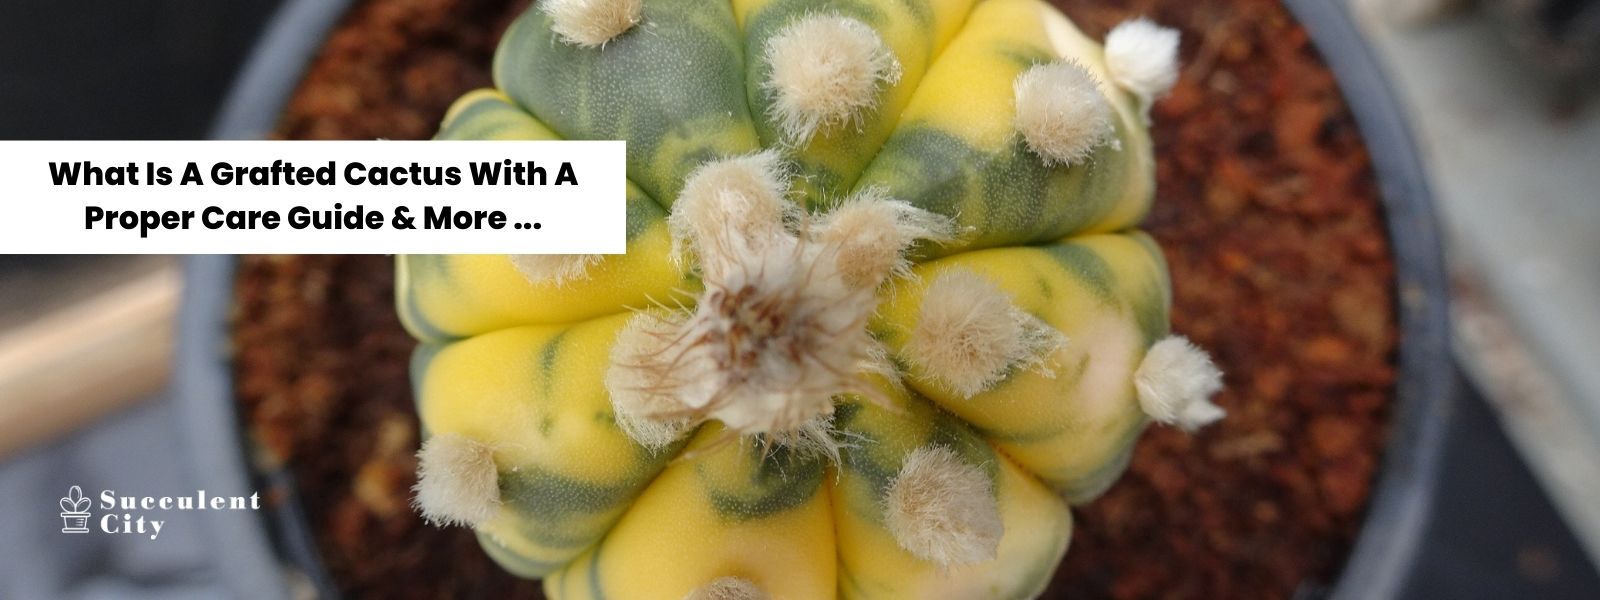 Qué es un Cactus Injertado con una Guía de Cuidados Adecuados y Más...